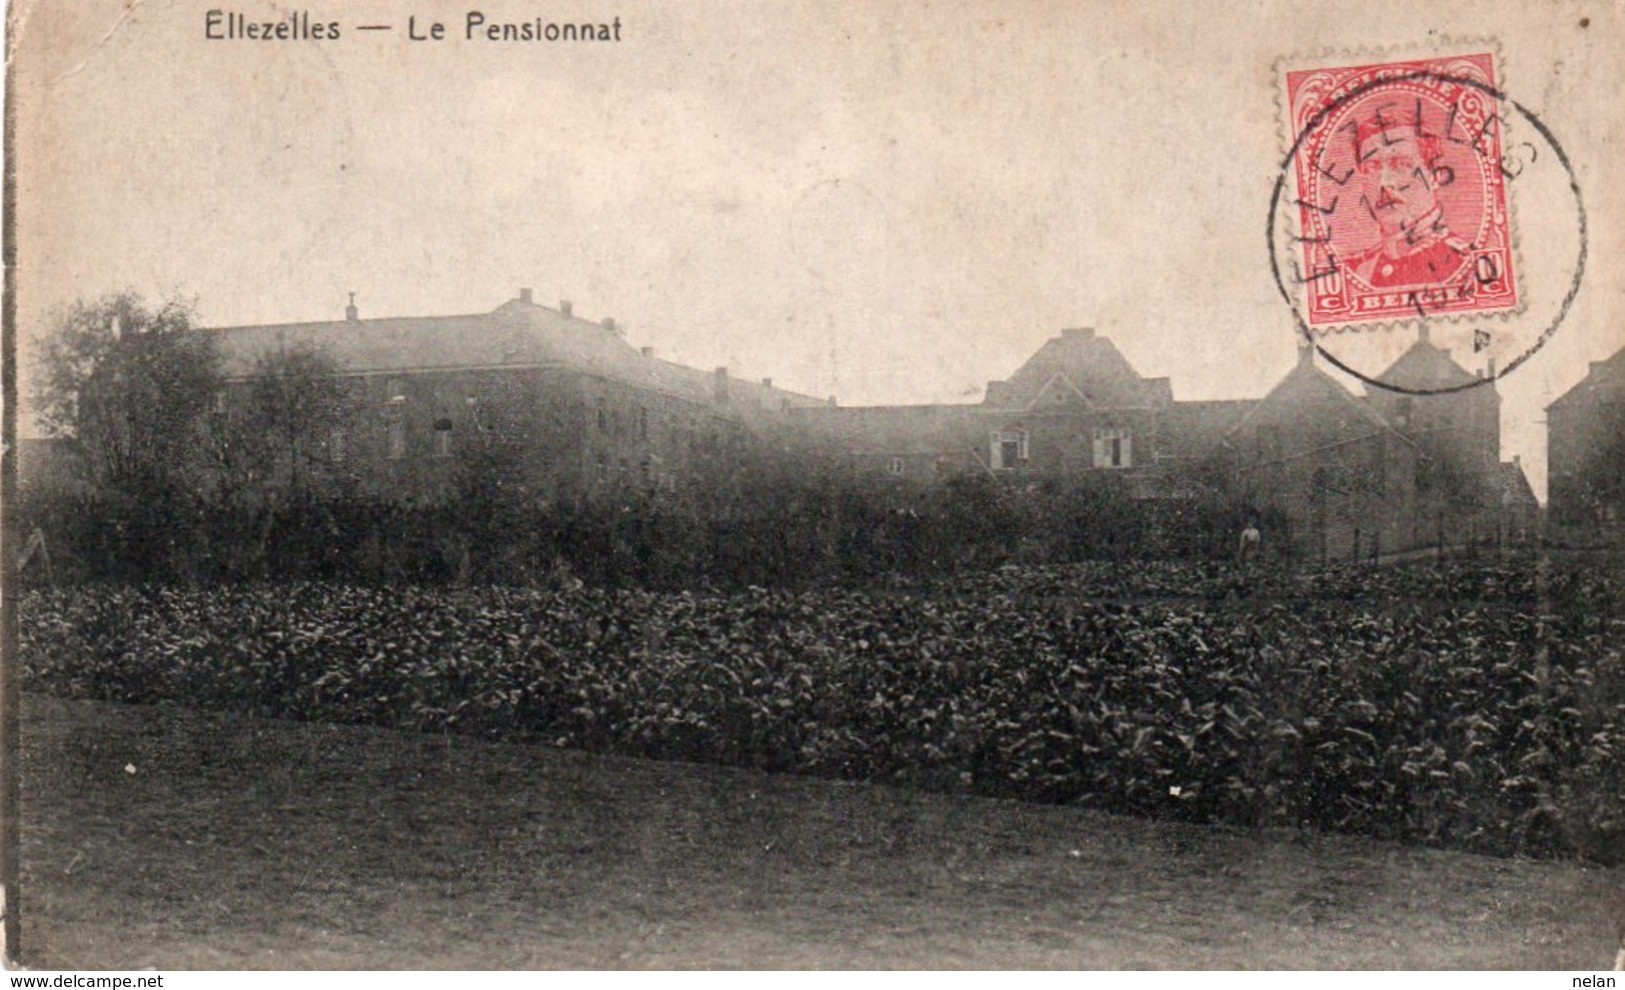 ELLEZELLES-LE PENSIONNAT-1920 - Ellezelles